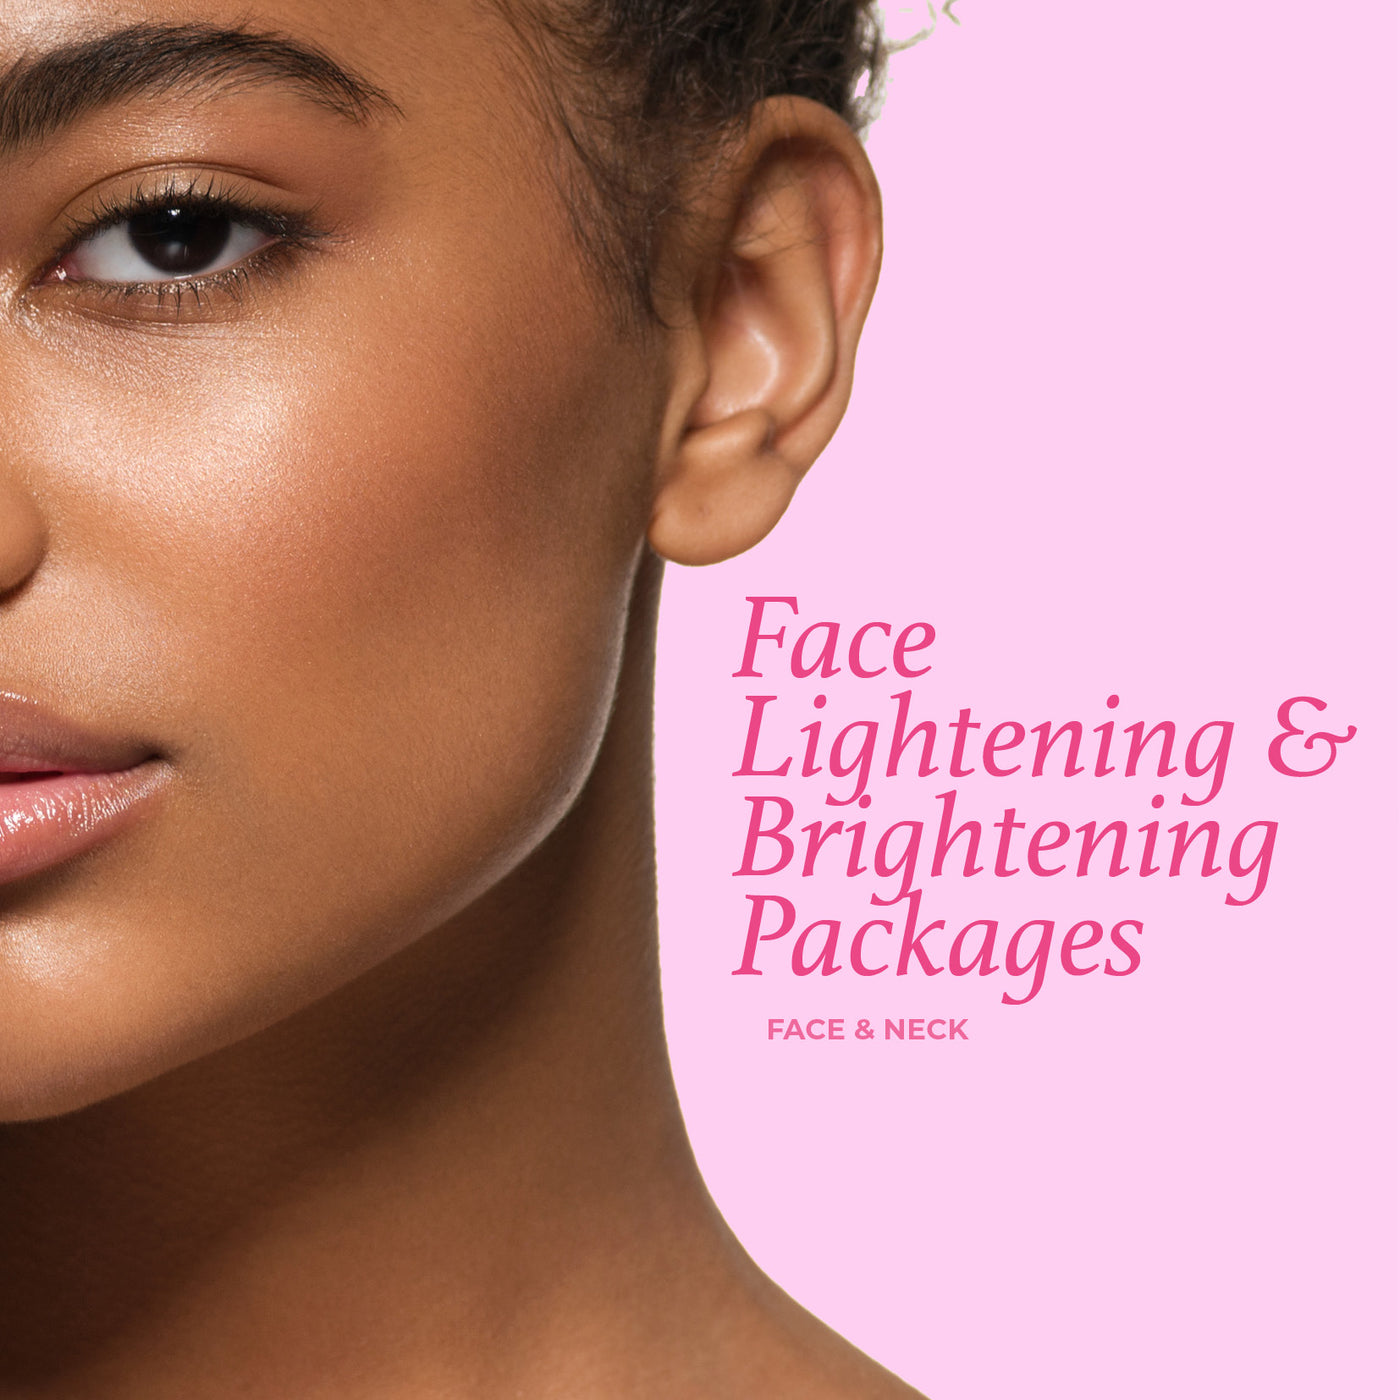 Face Lightening & Brightening Package - Face & Neck